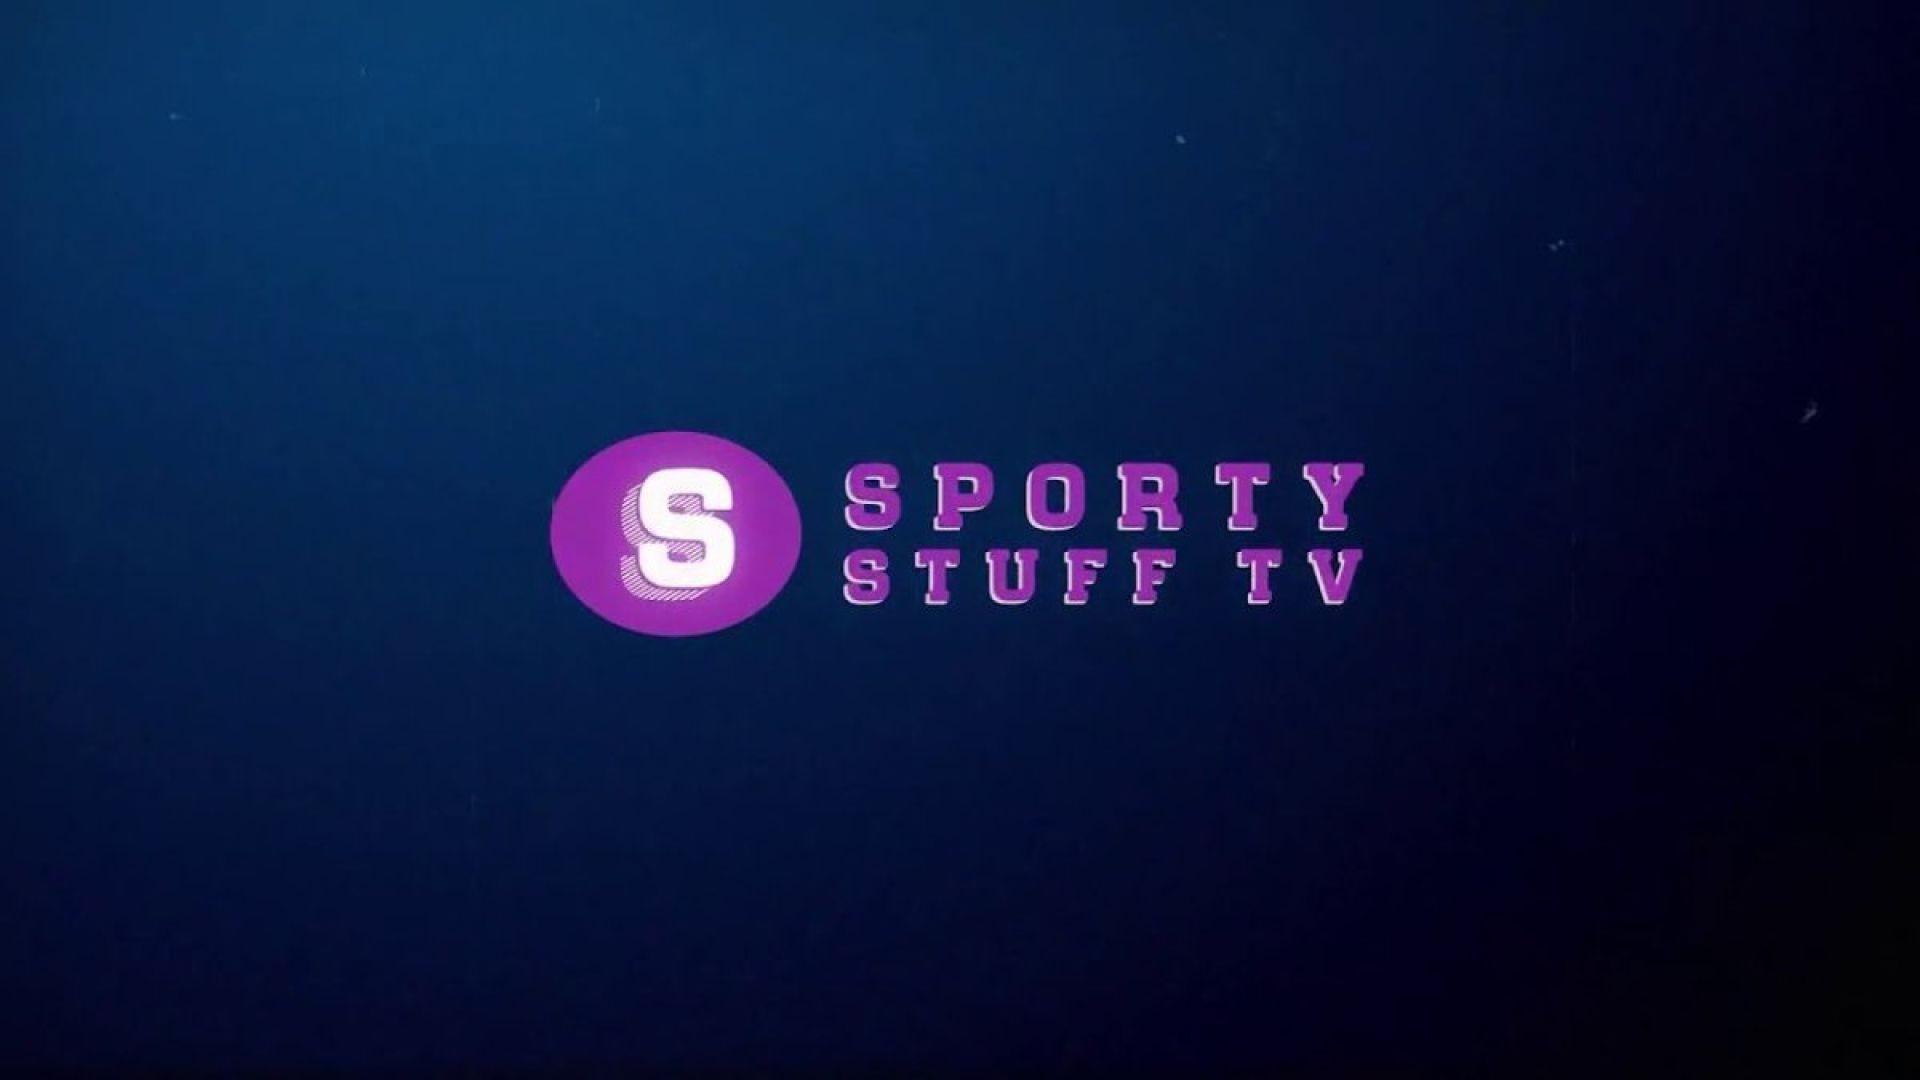 SportyStuff TV Live